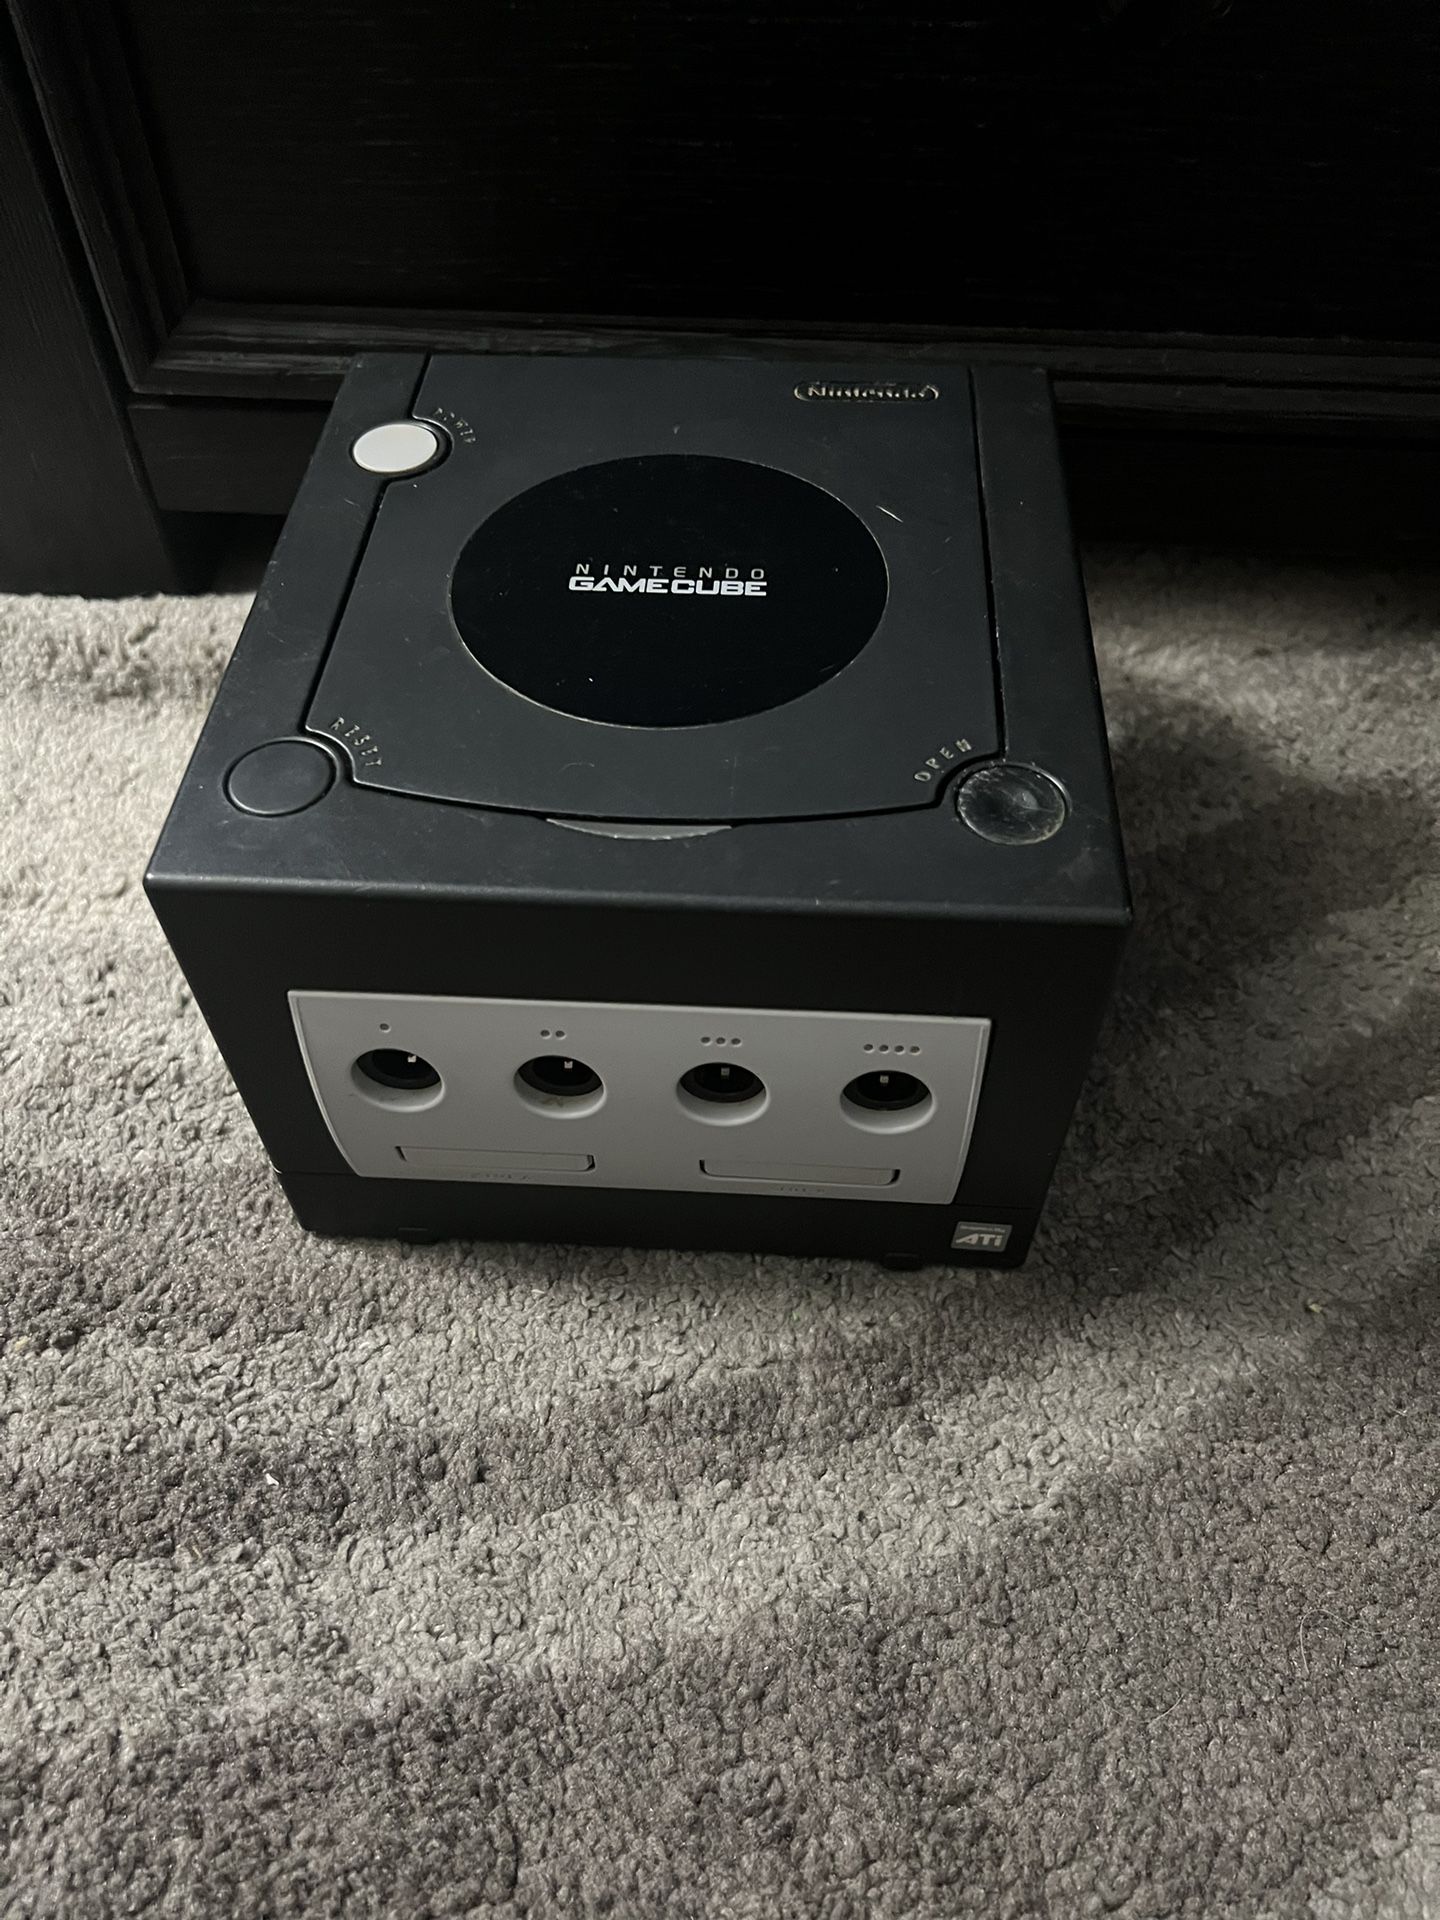 Nintendo GameCube 